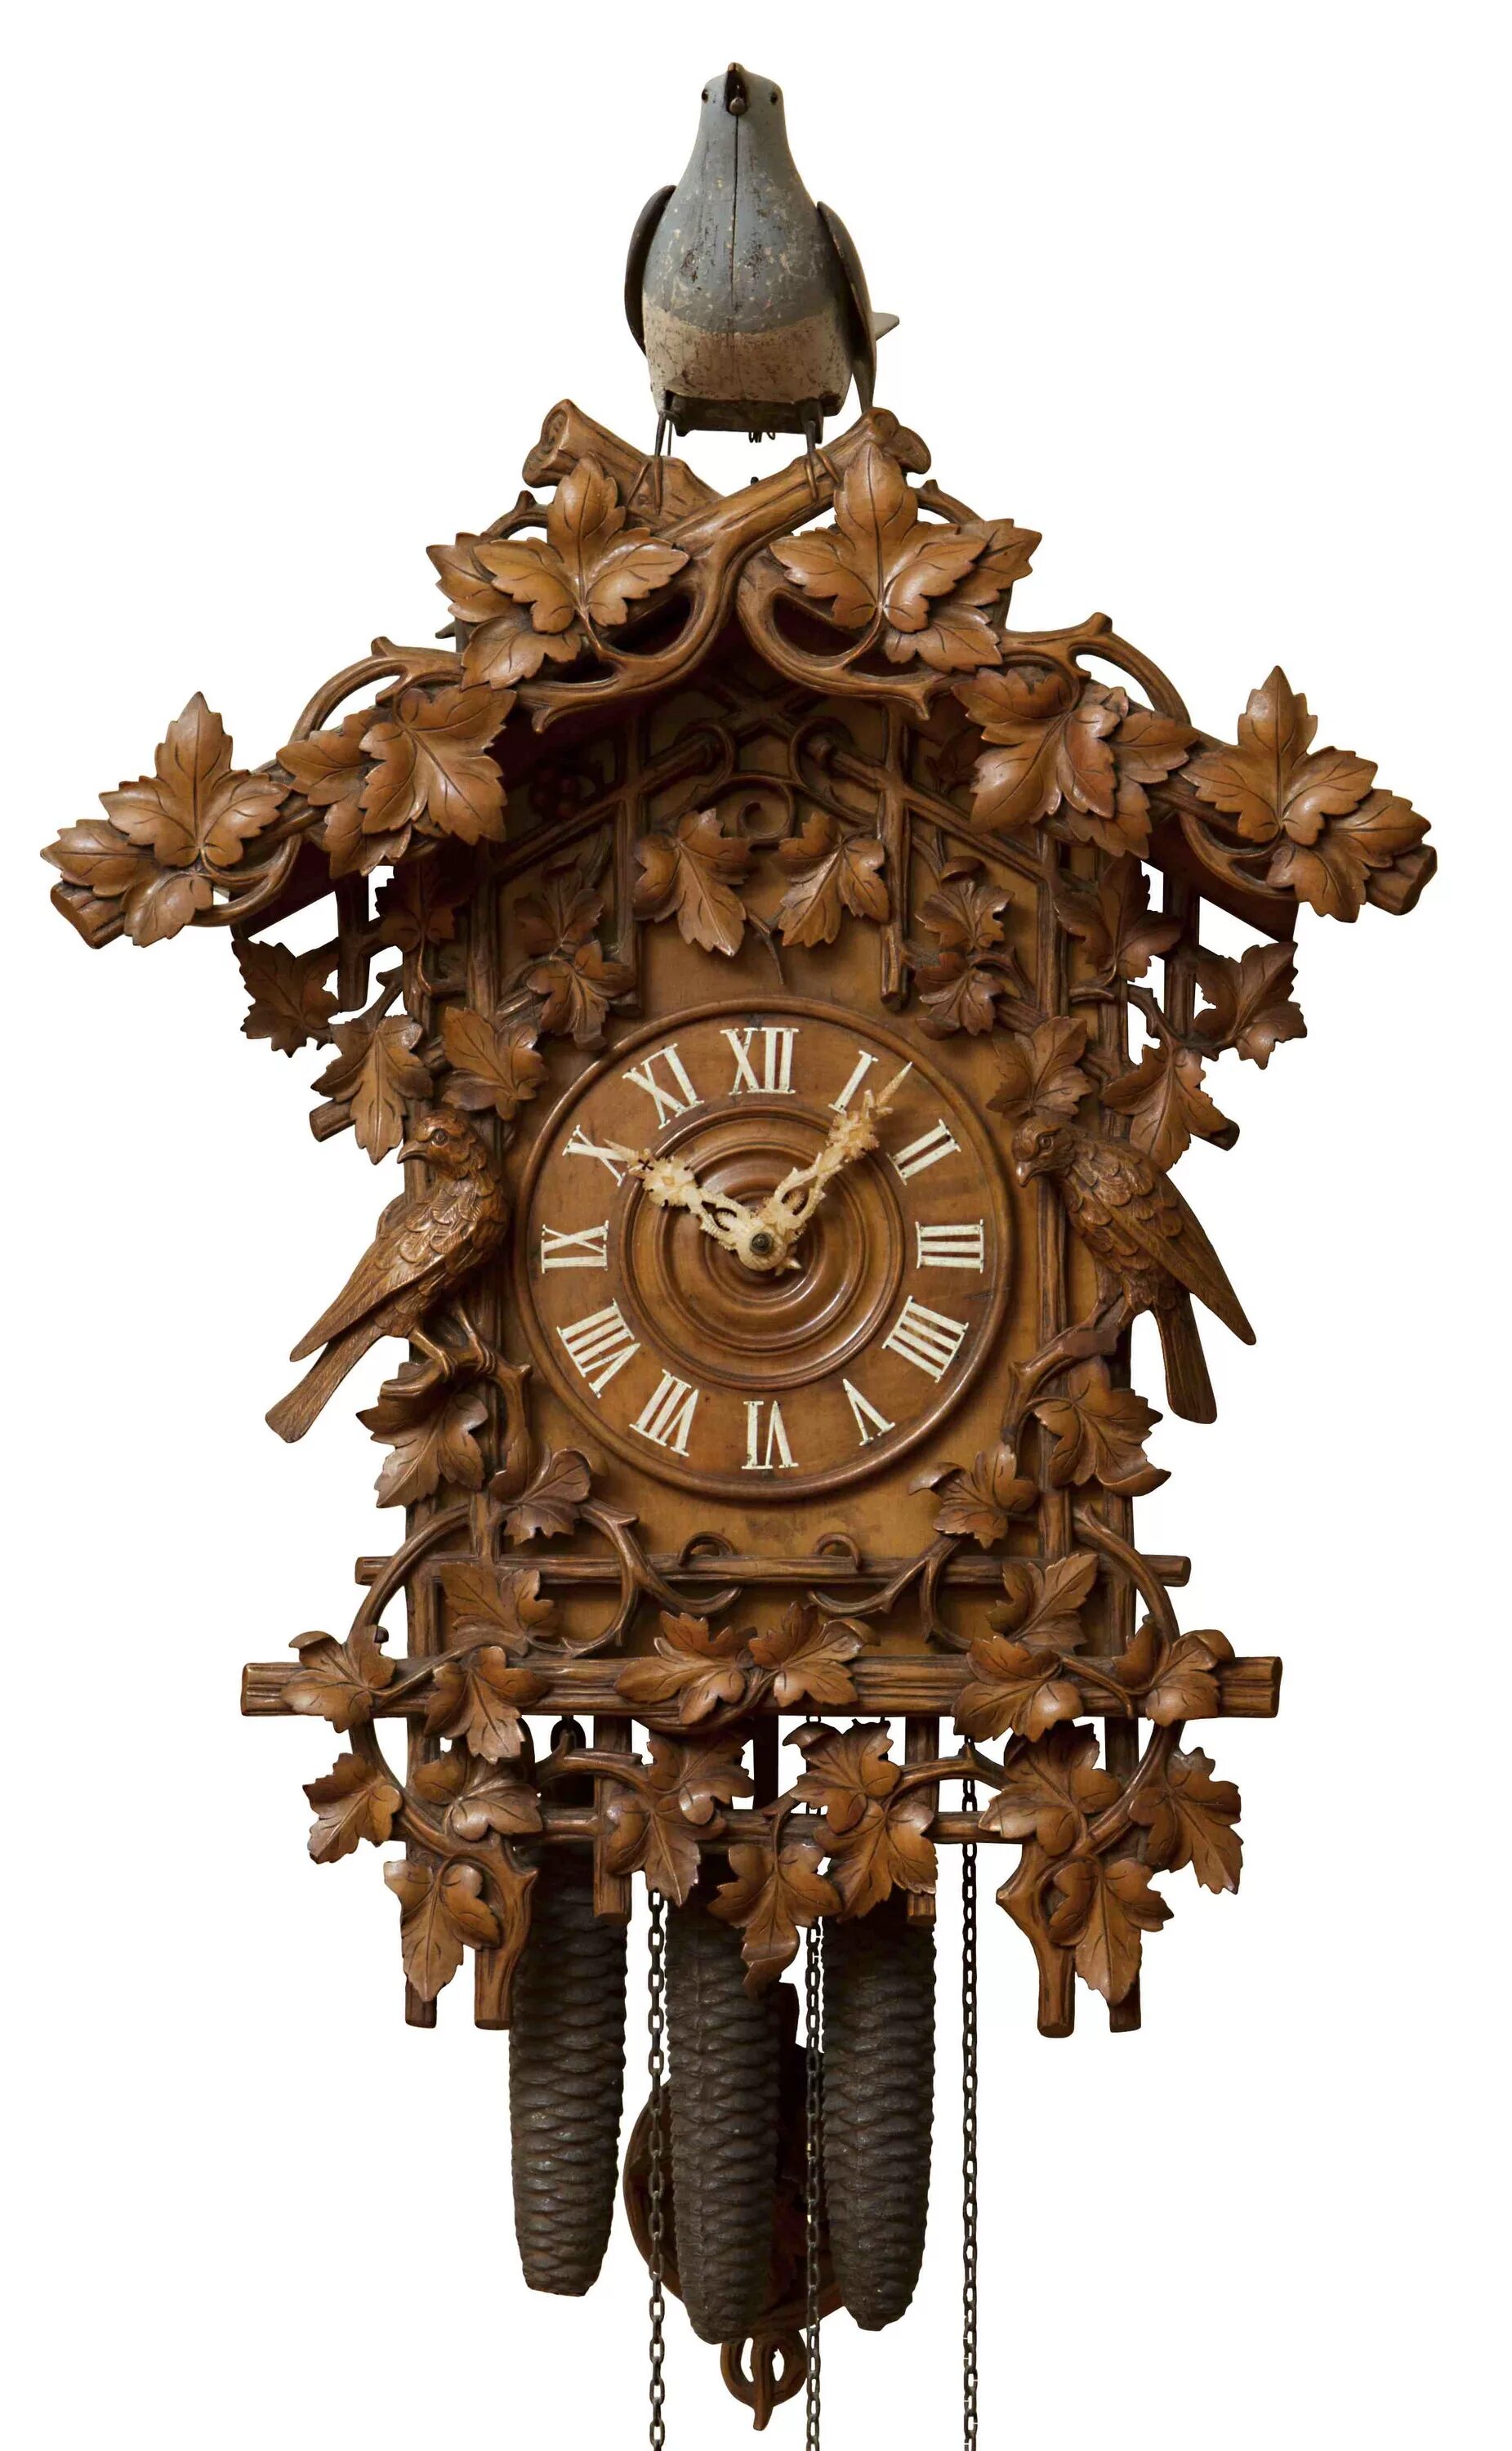 Настенные часы ходики. Часы с кукушкой Kaiser k9503. Часы с кукушкой John Baptist Beha. Часы с кукушкой Cuckoo. Ходики с кукушкой 19 век.